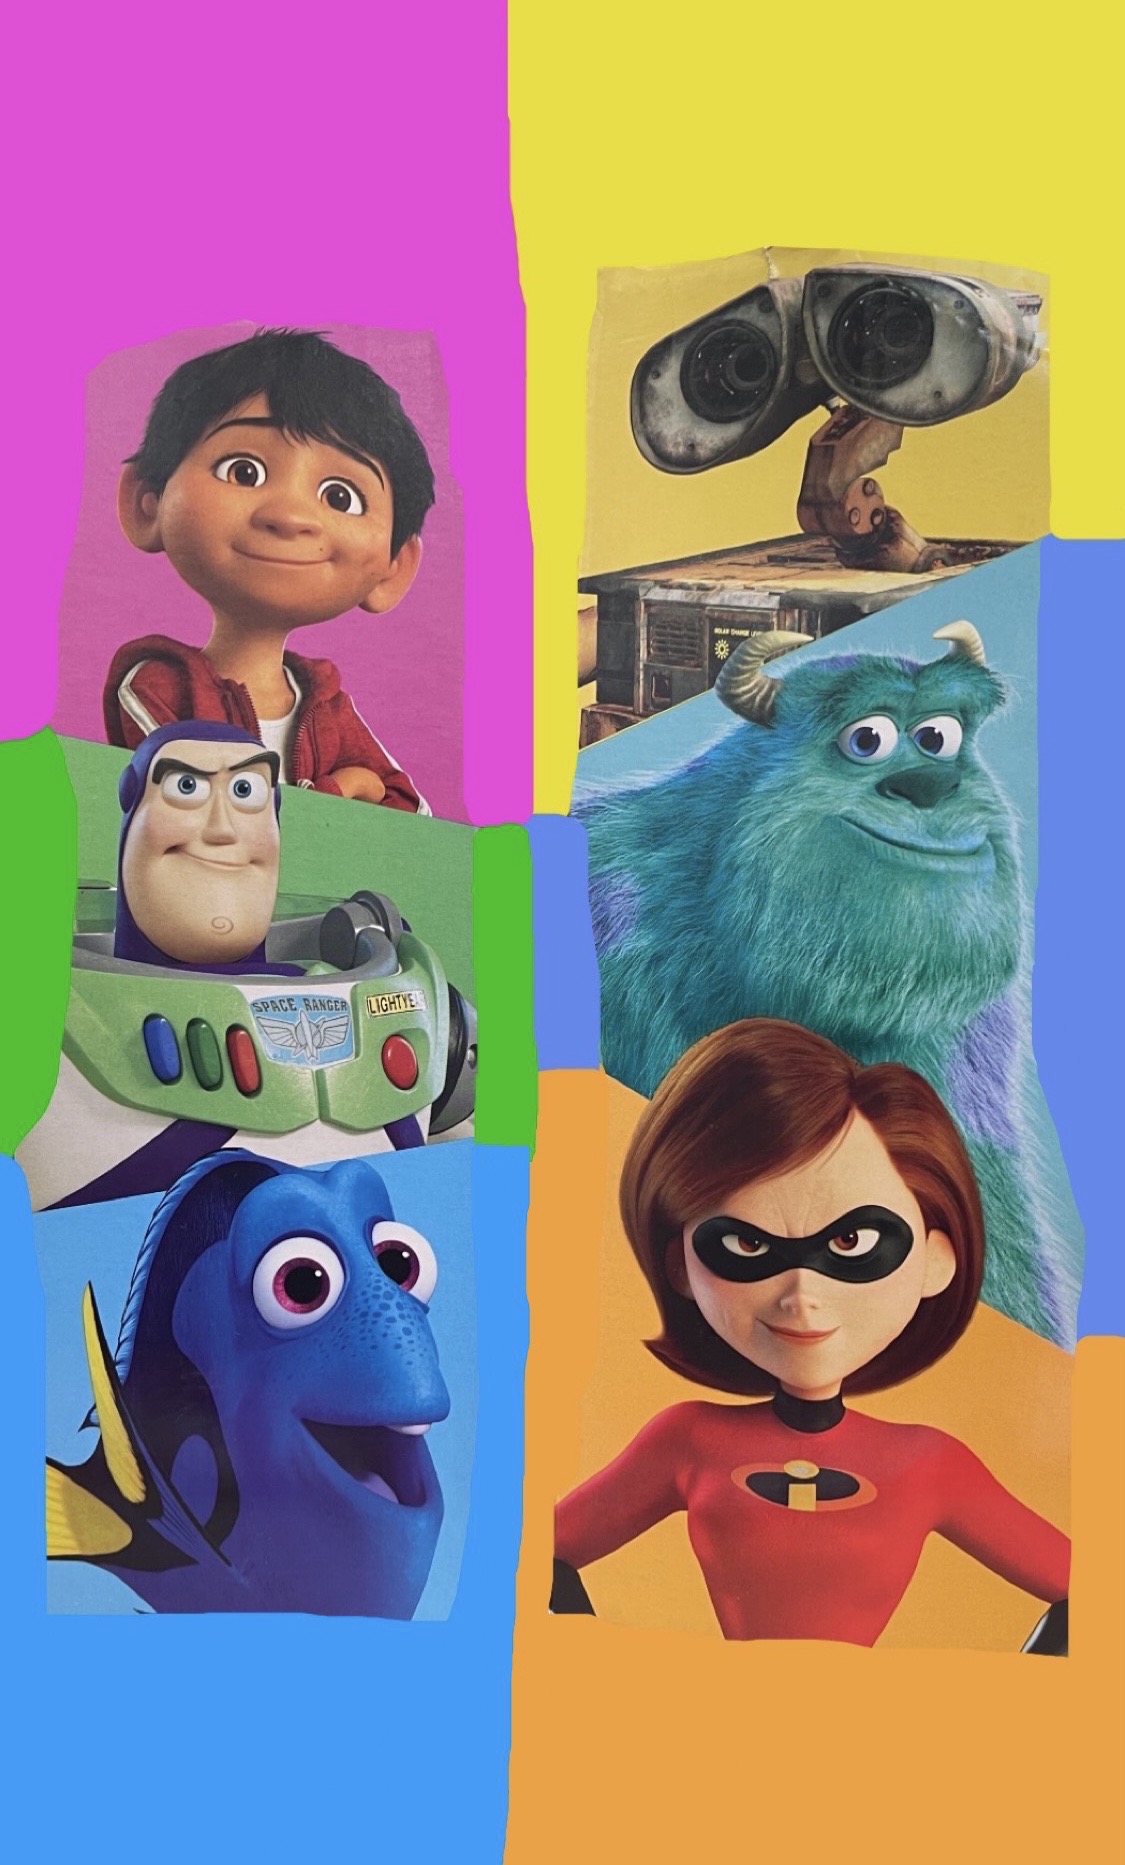 Pixar Friends